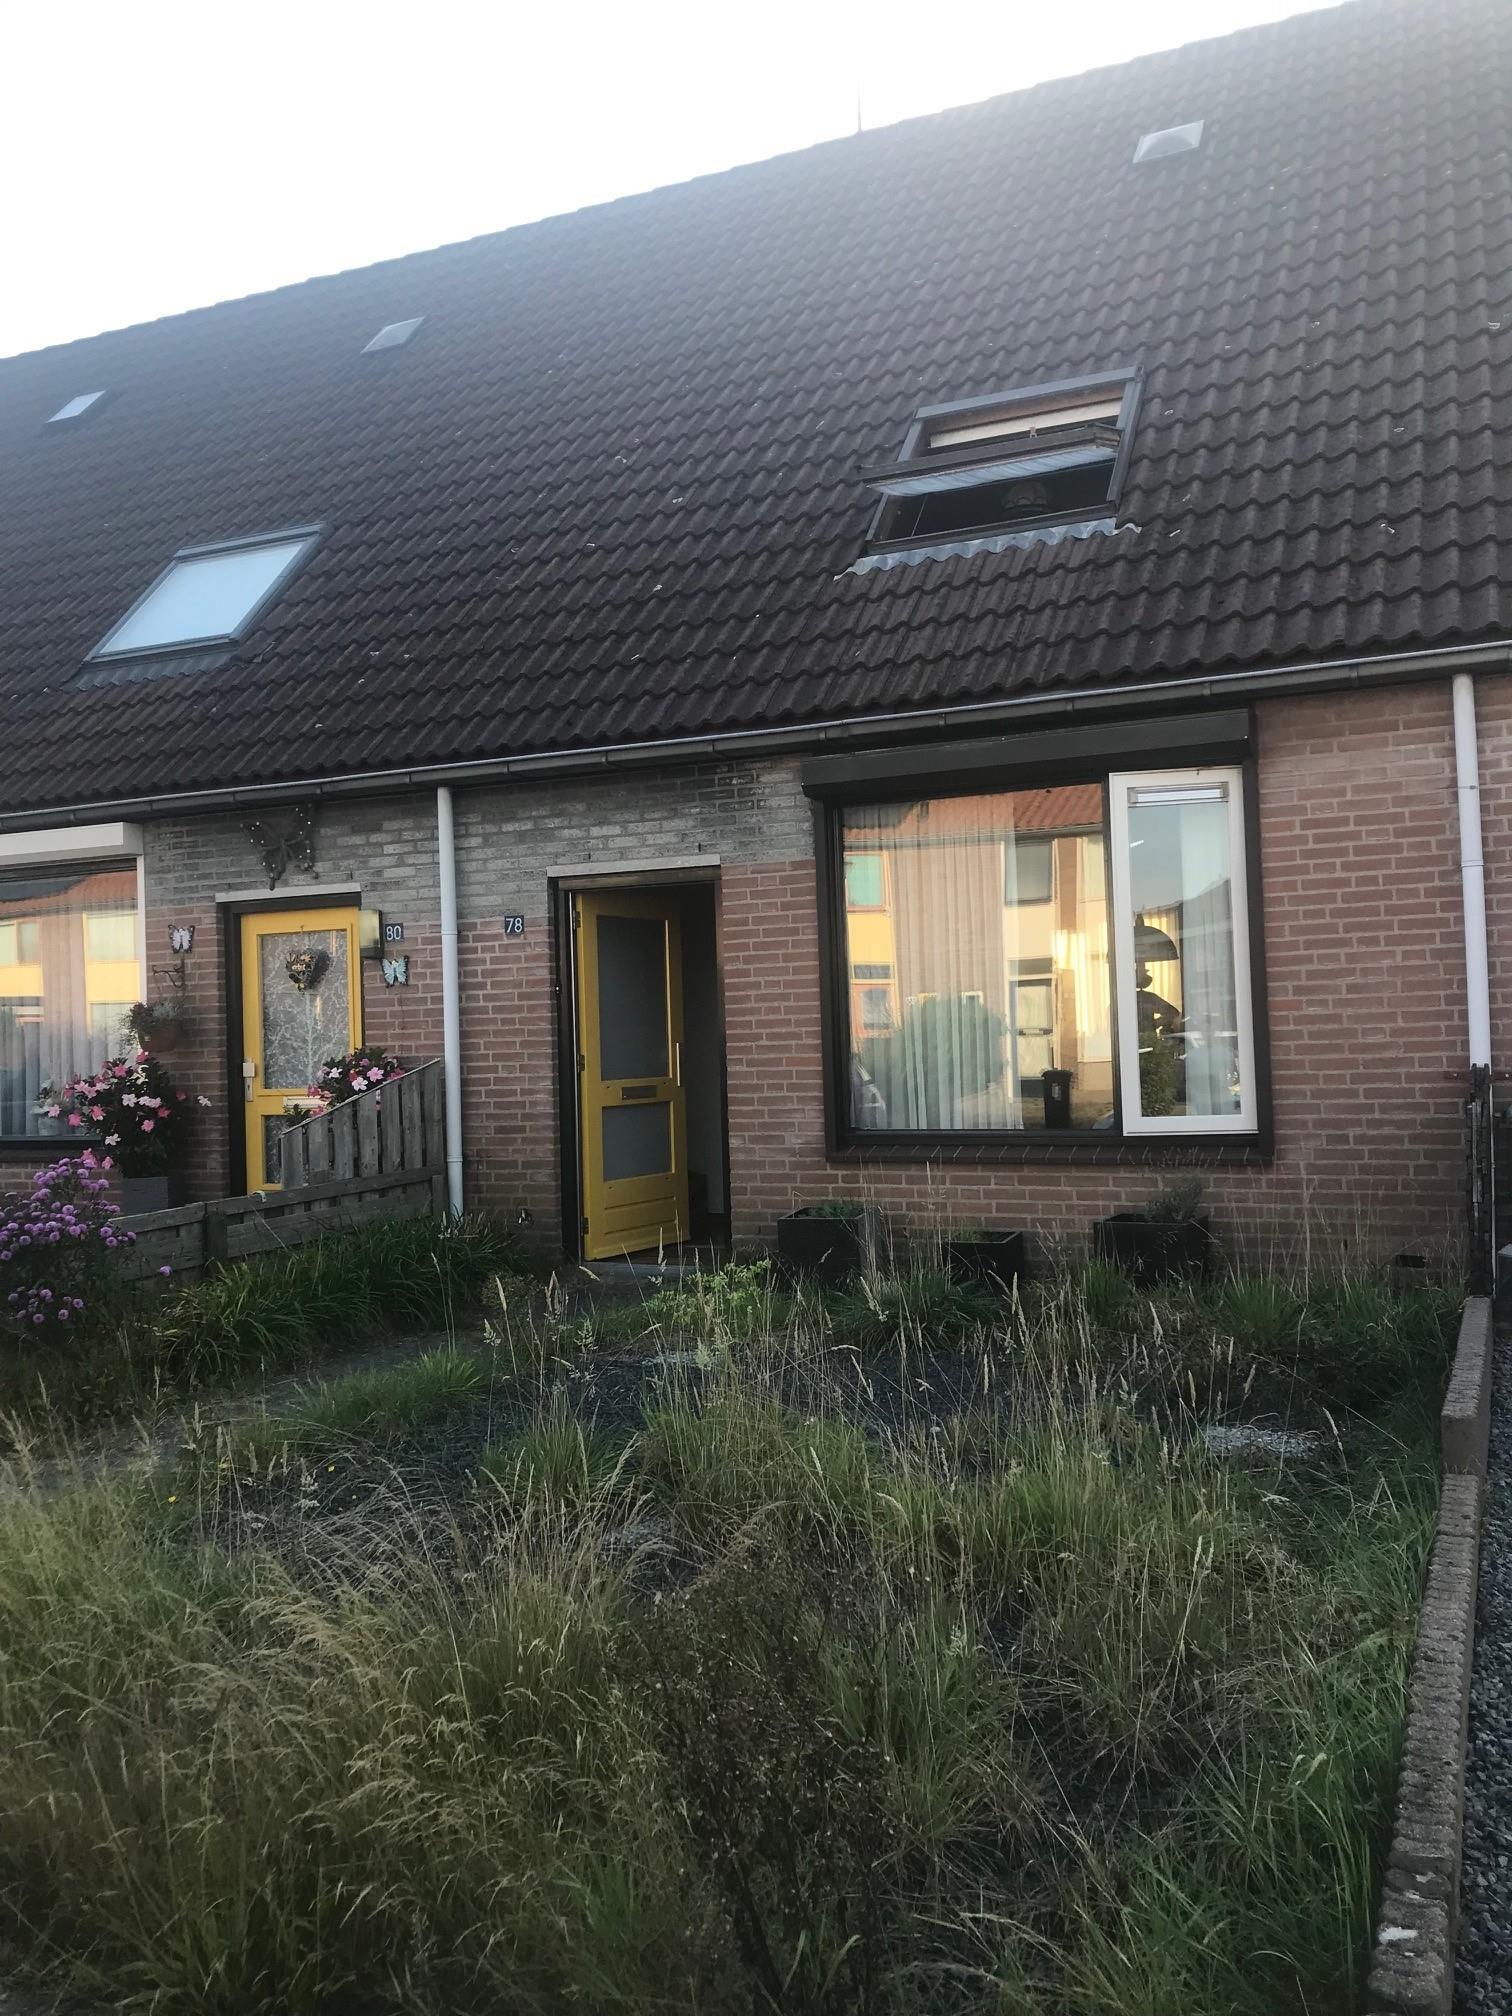 Heer Zegerstraat 78, 6561 BT Groesbeek, Nederland